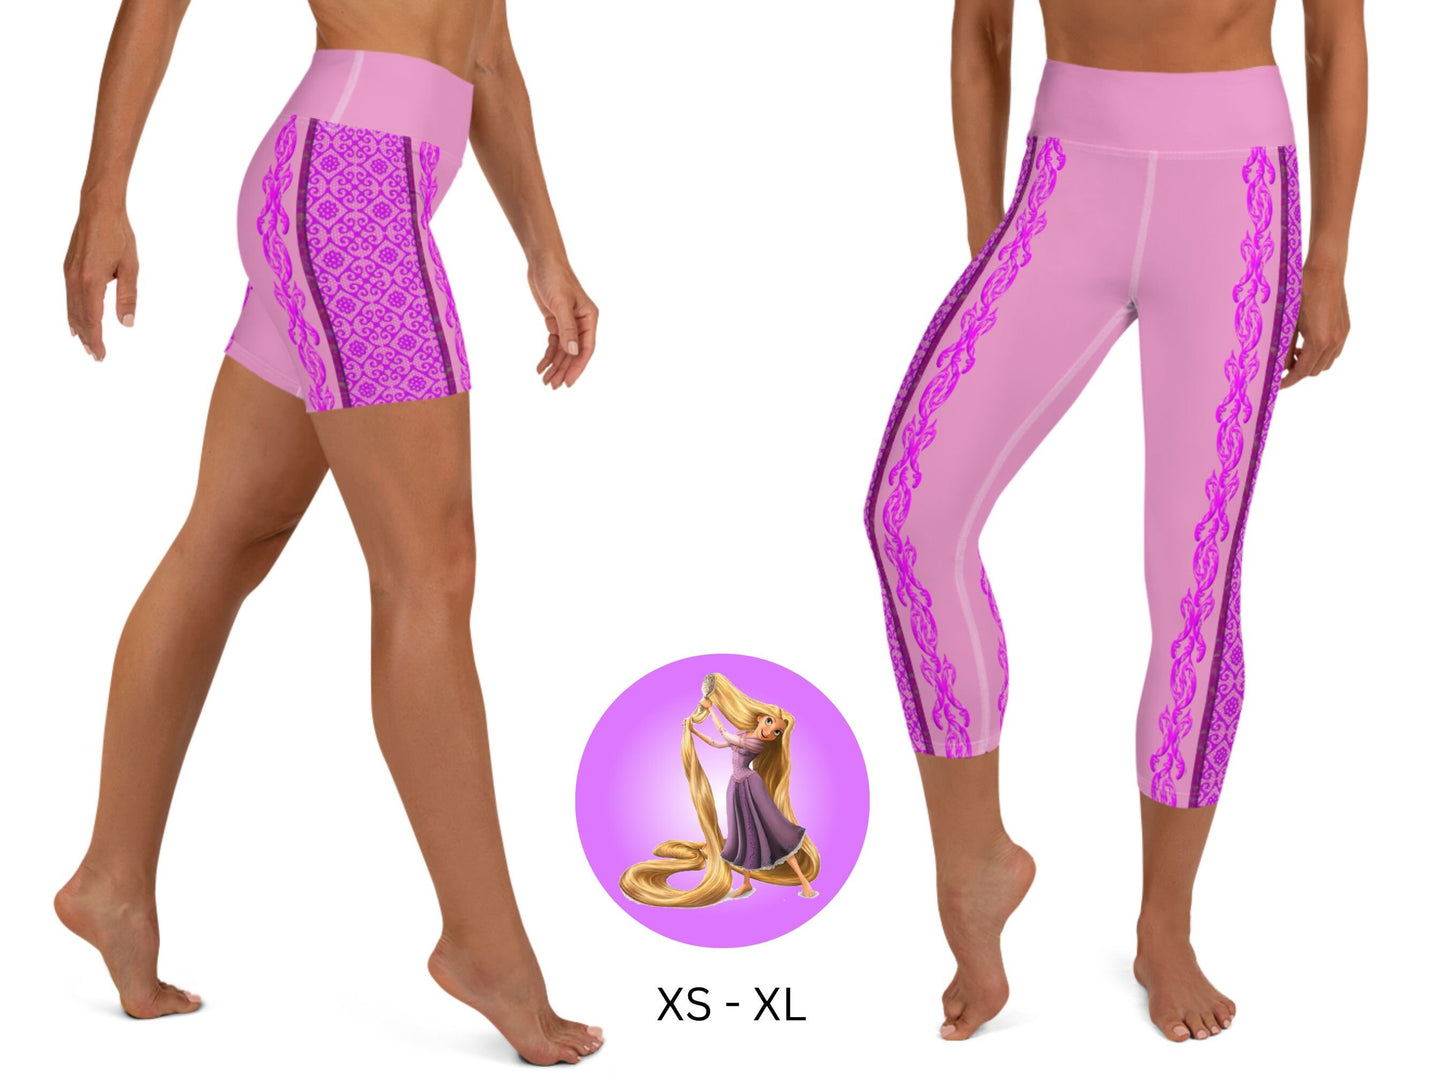 Rapunzel Tangled Skater Dress Yoga Leggings & Shorts, Halloween, Cosplay, Gift for Her, Birthday Party